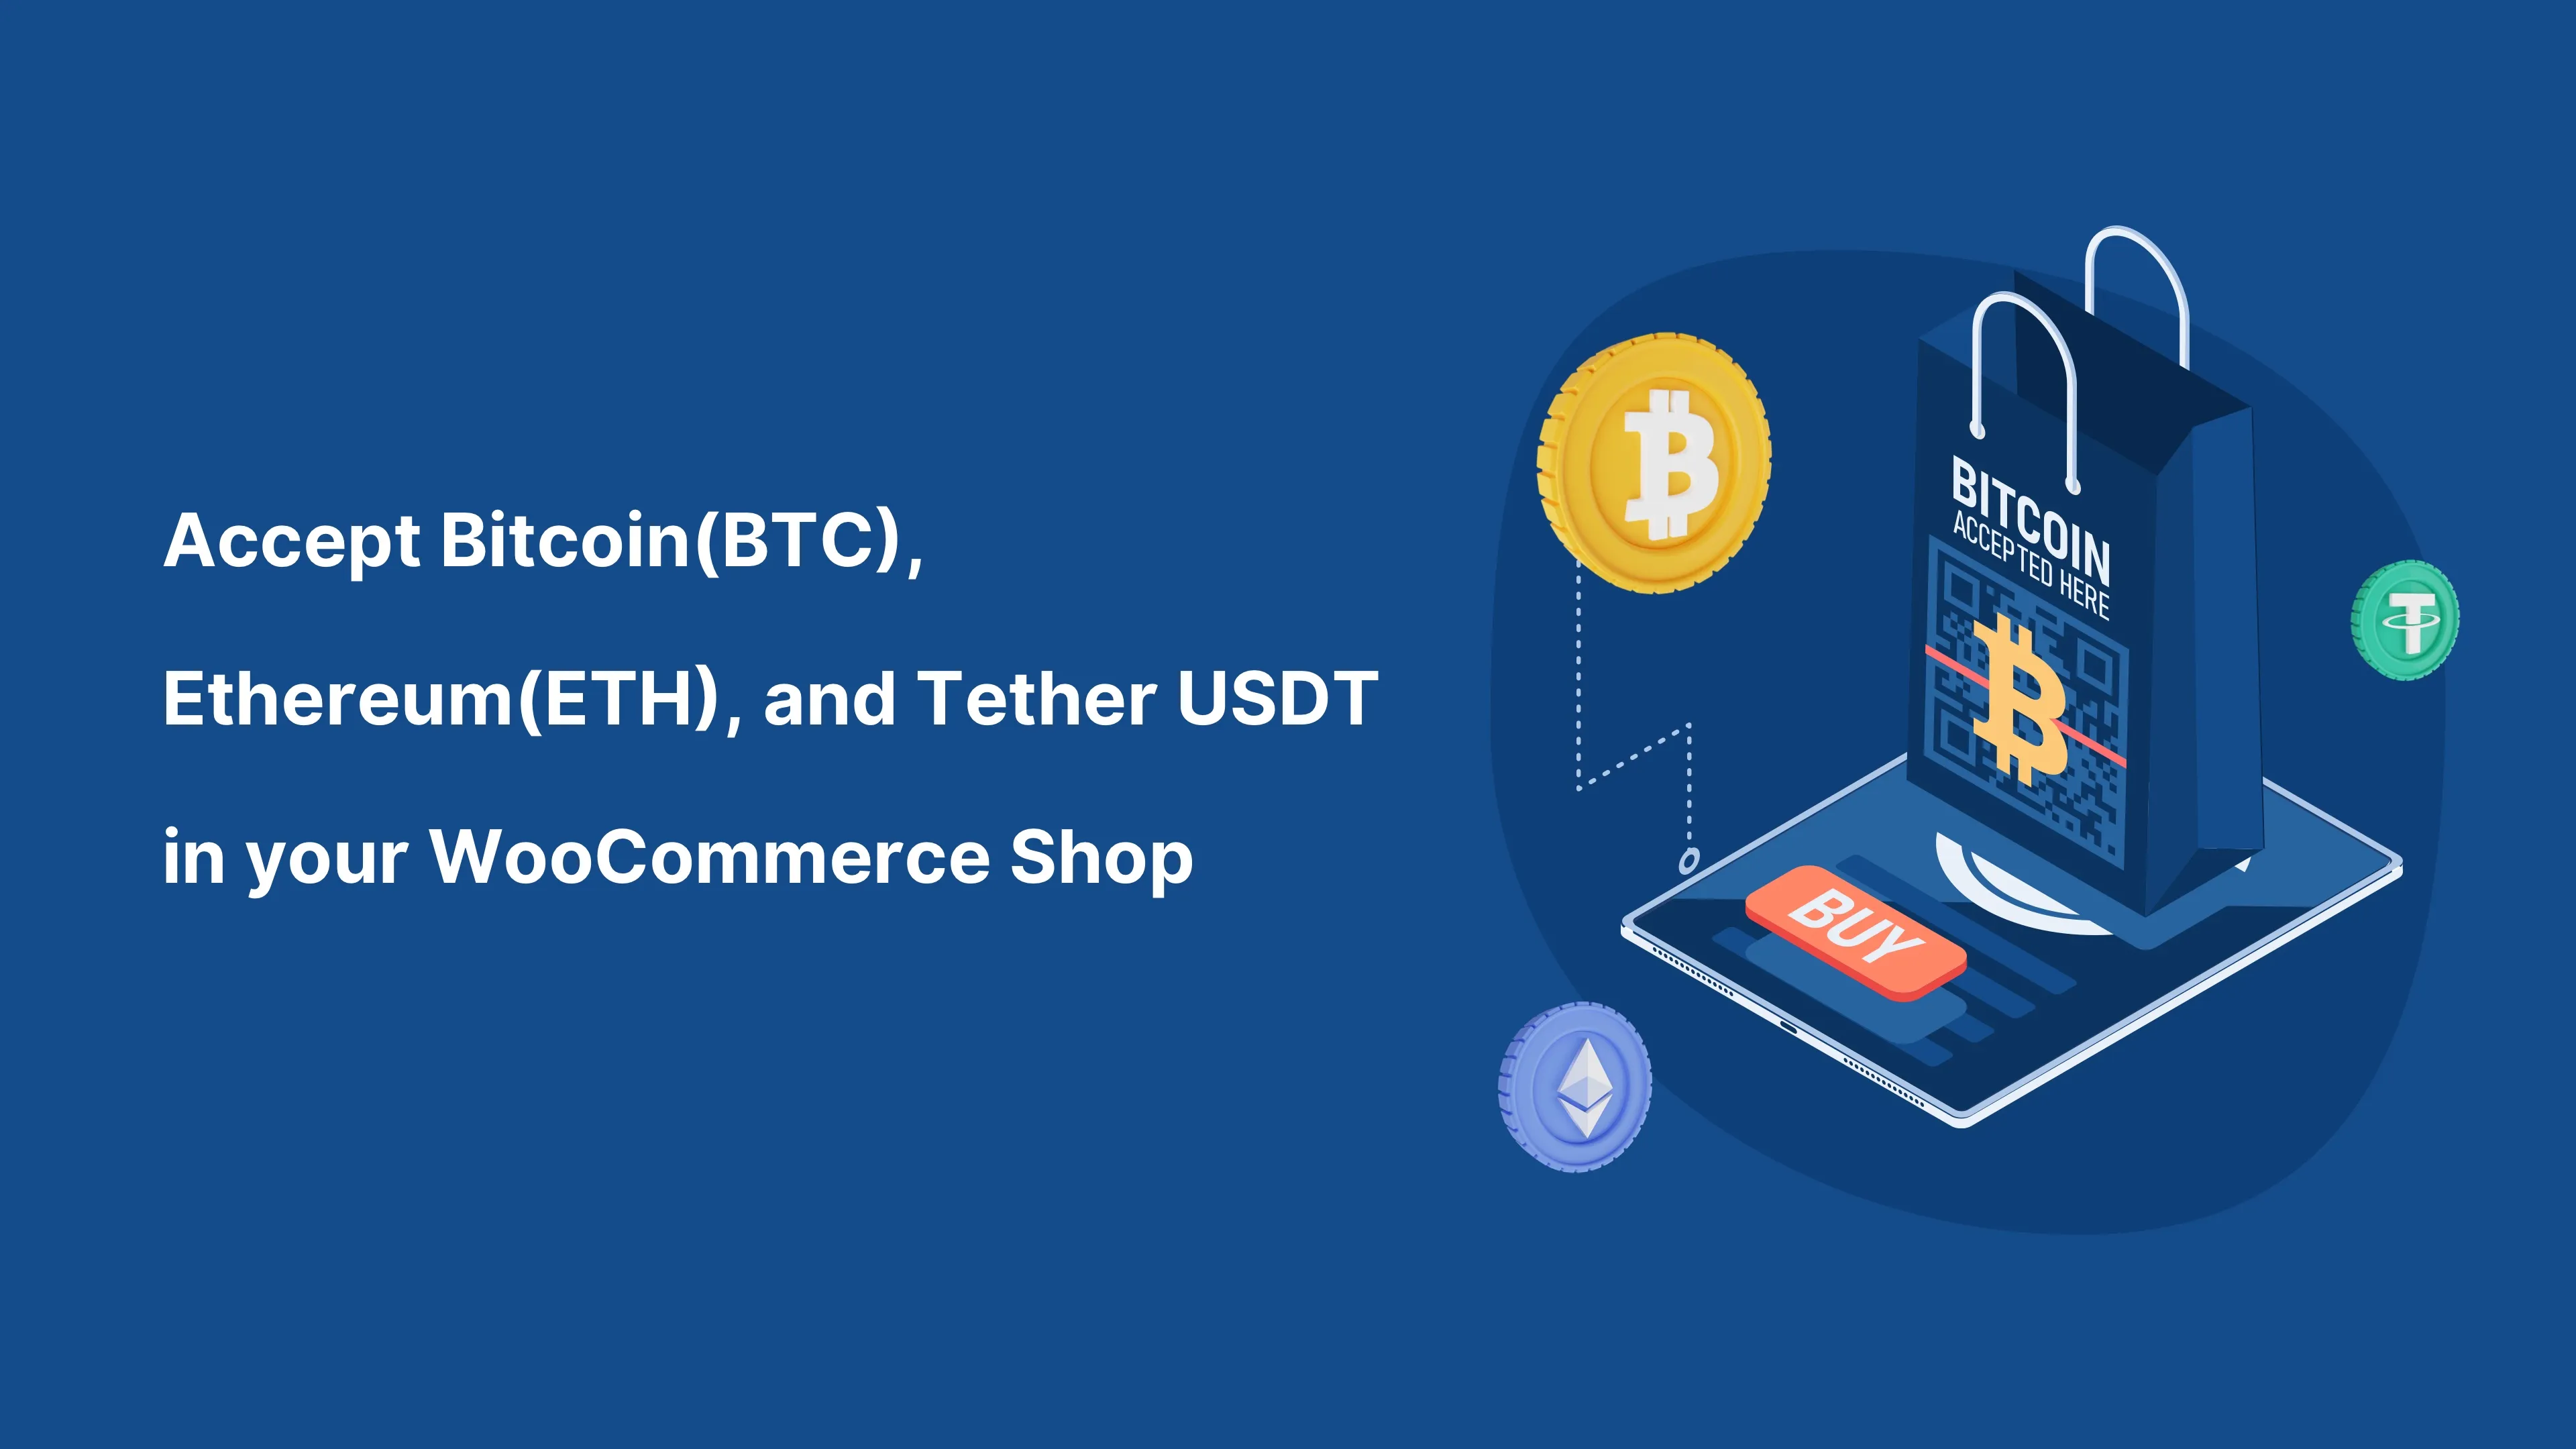 Acepte Bitcoin (BTC) y cualquier criptomoneda en su tienda WooCommerce